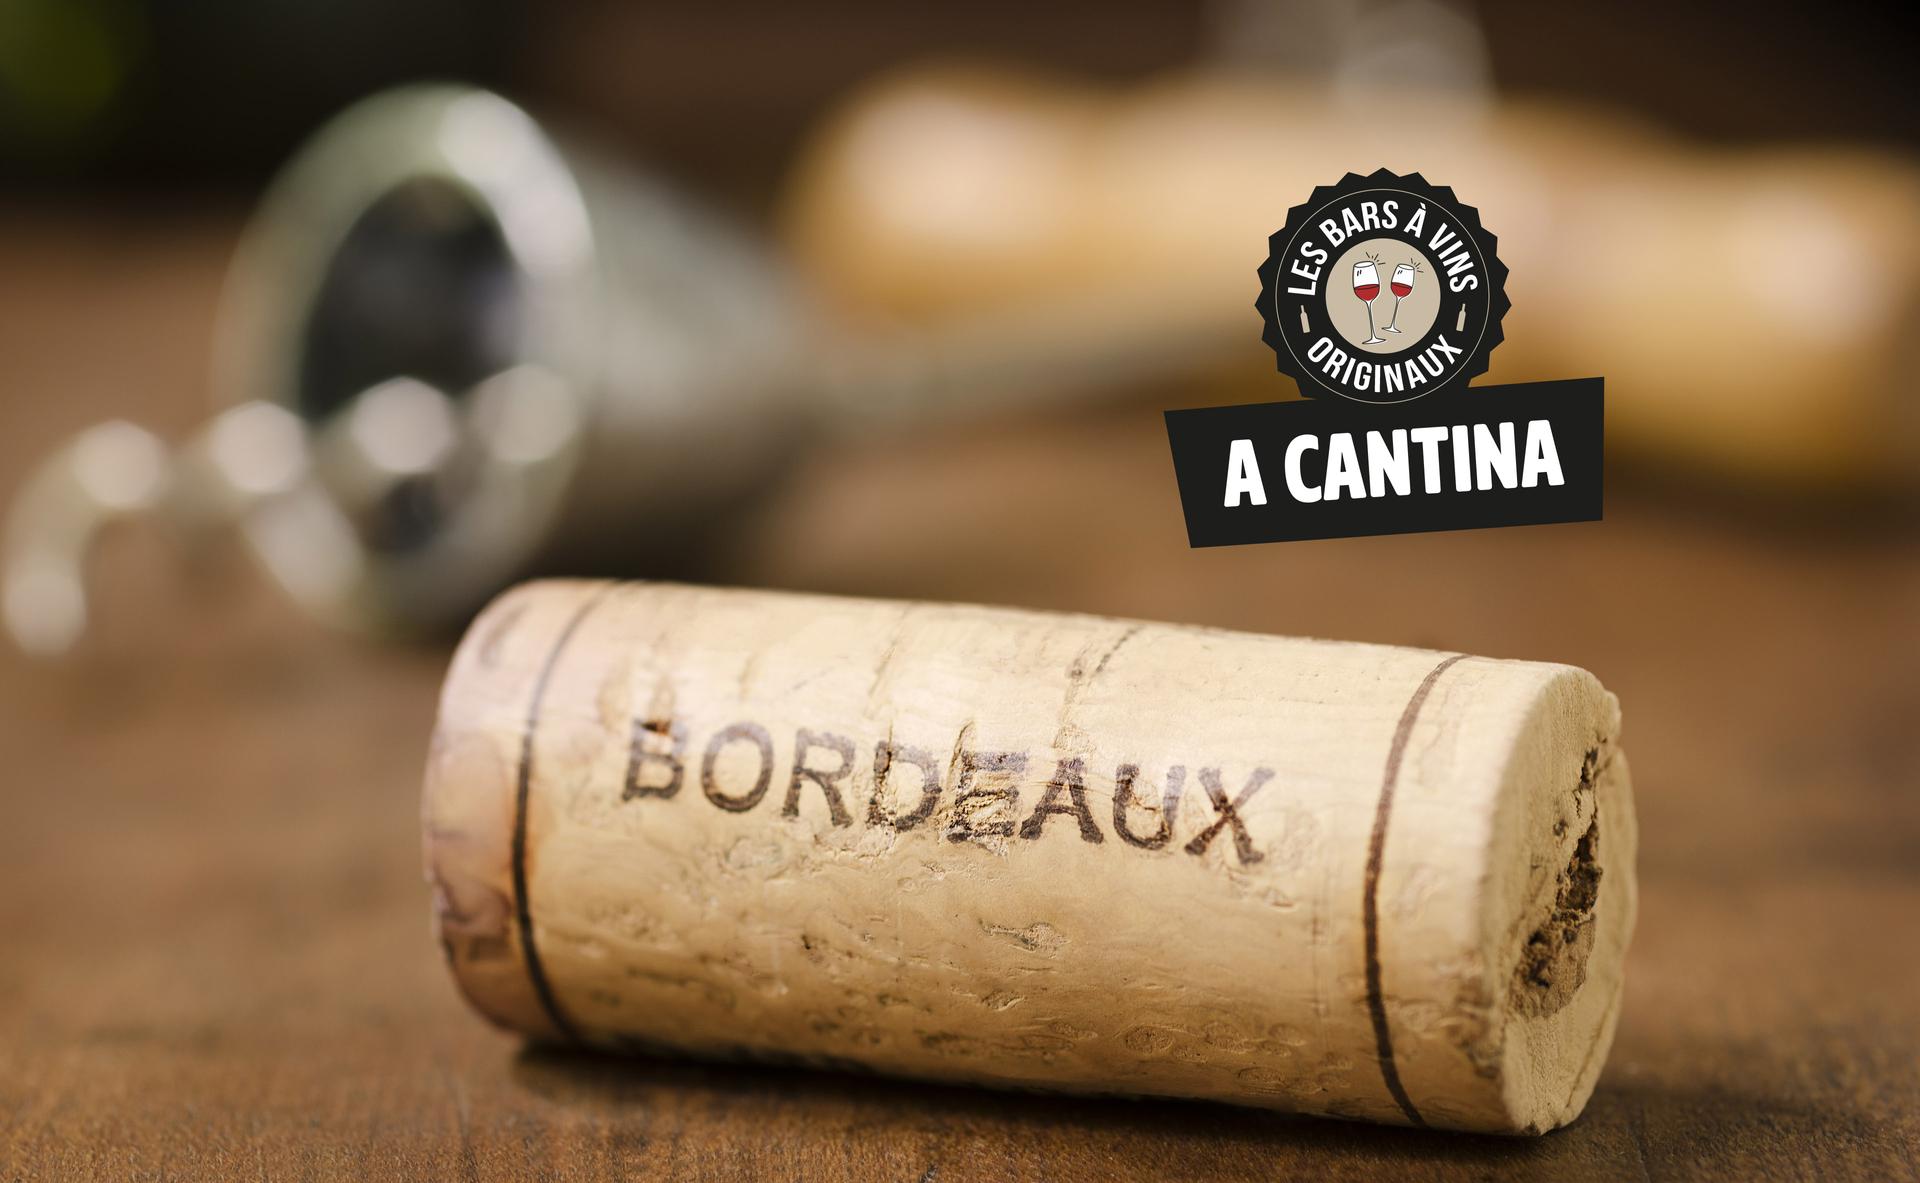 Vins et saveurs corses à Bordeaux : découvrez A cantina comptoir corse